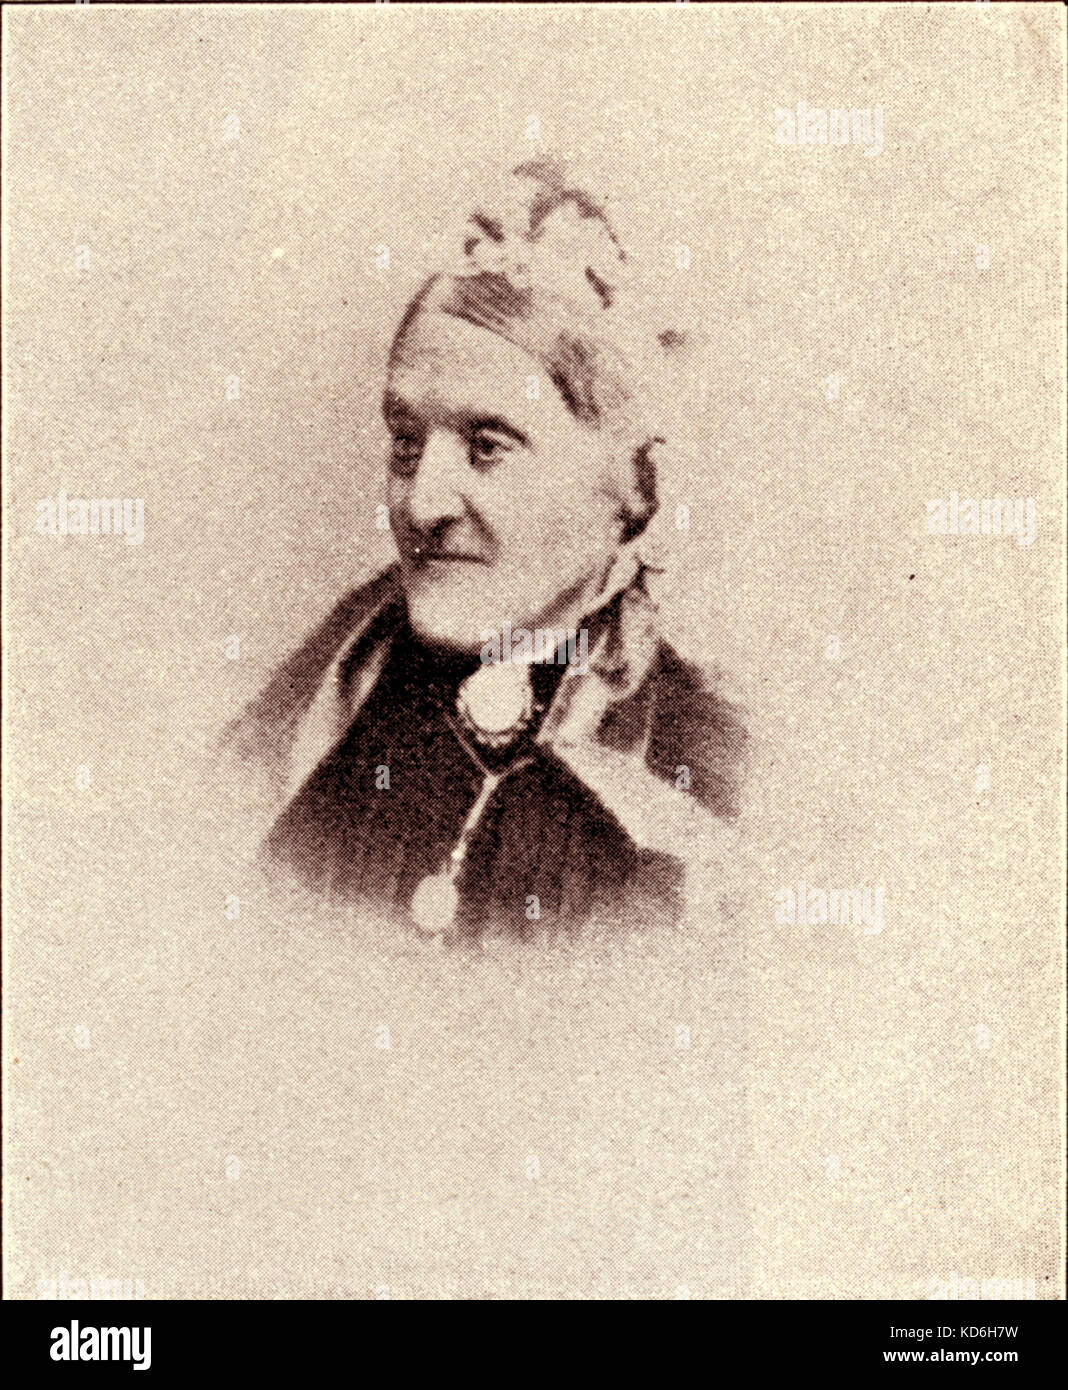 Klementine Wieck (neé Fechner), Frederick Wieck's second wife and Clara Wieck's (later Schumann) stepmother. Clara Schumann: German pianist (1819-1896), wife of the composer, Robert Schumann. Stock Photo